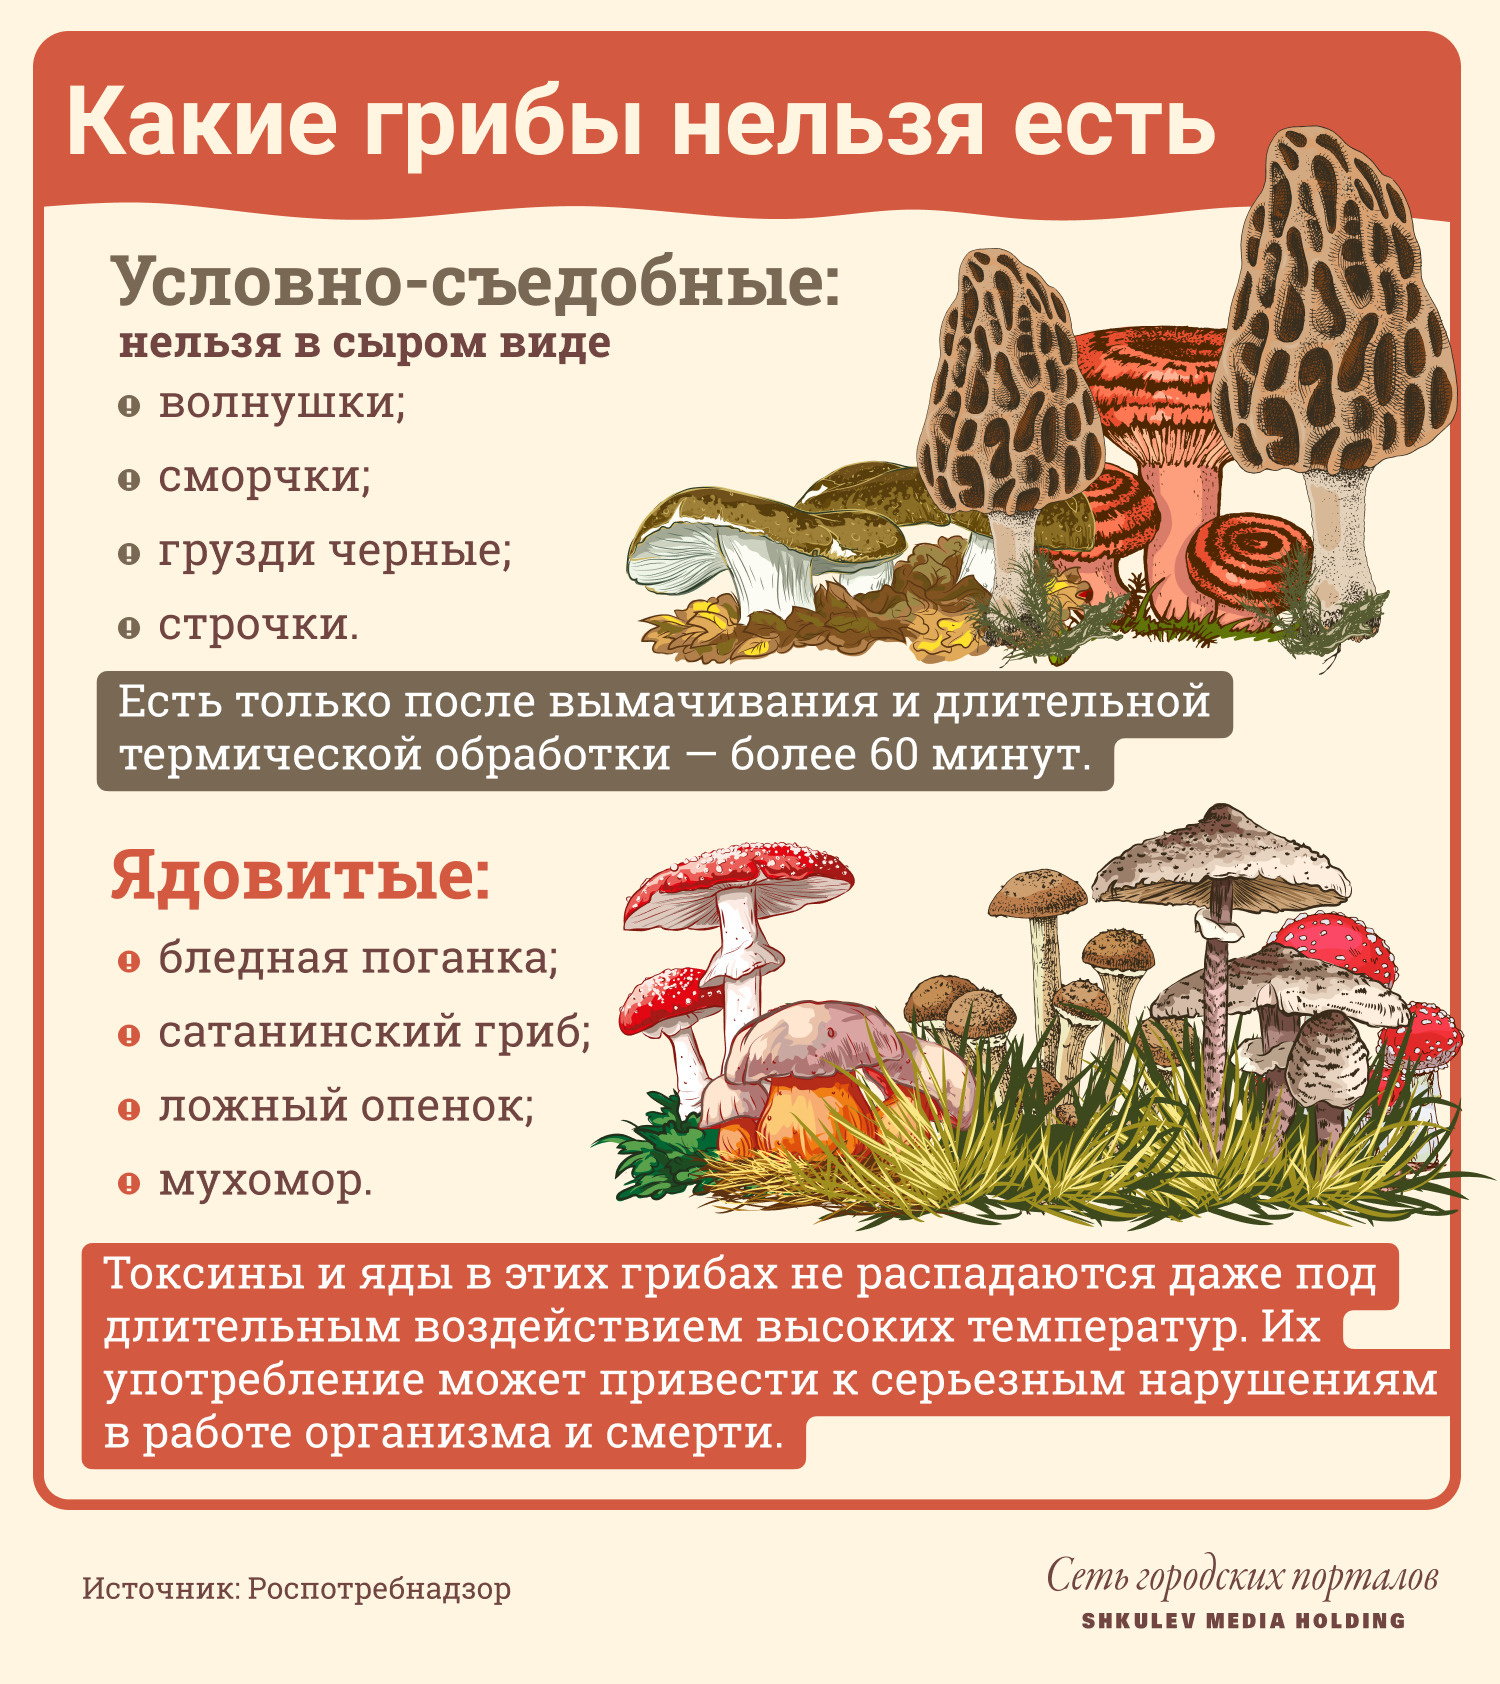 Какие грибы нельзя употреблять в пищу